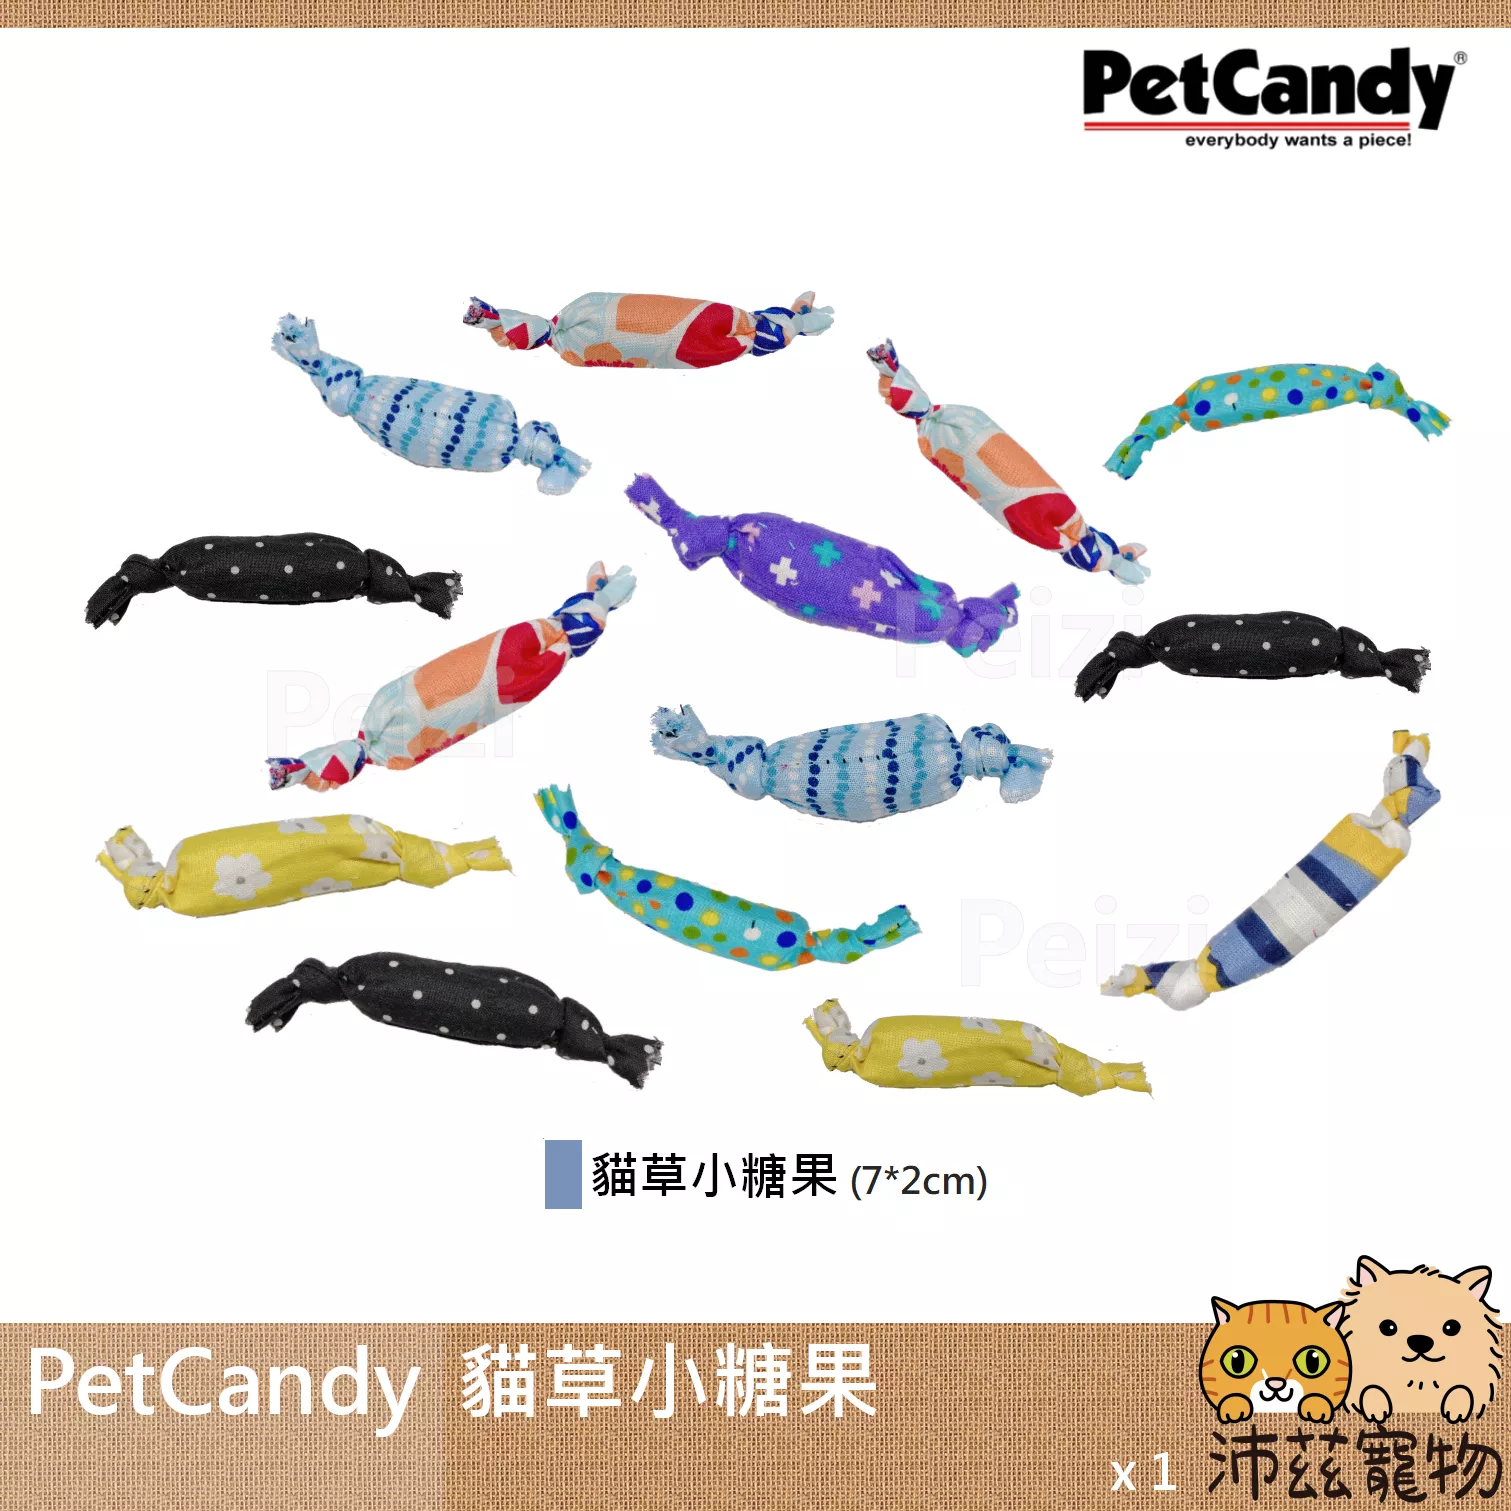 【PetCandy 貓草小糖果】Pet Candy 貓草玩具 美國 貓草 貓玩具 貓 玩具